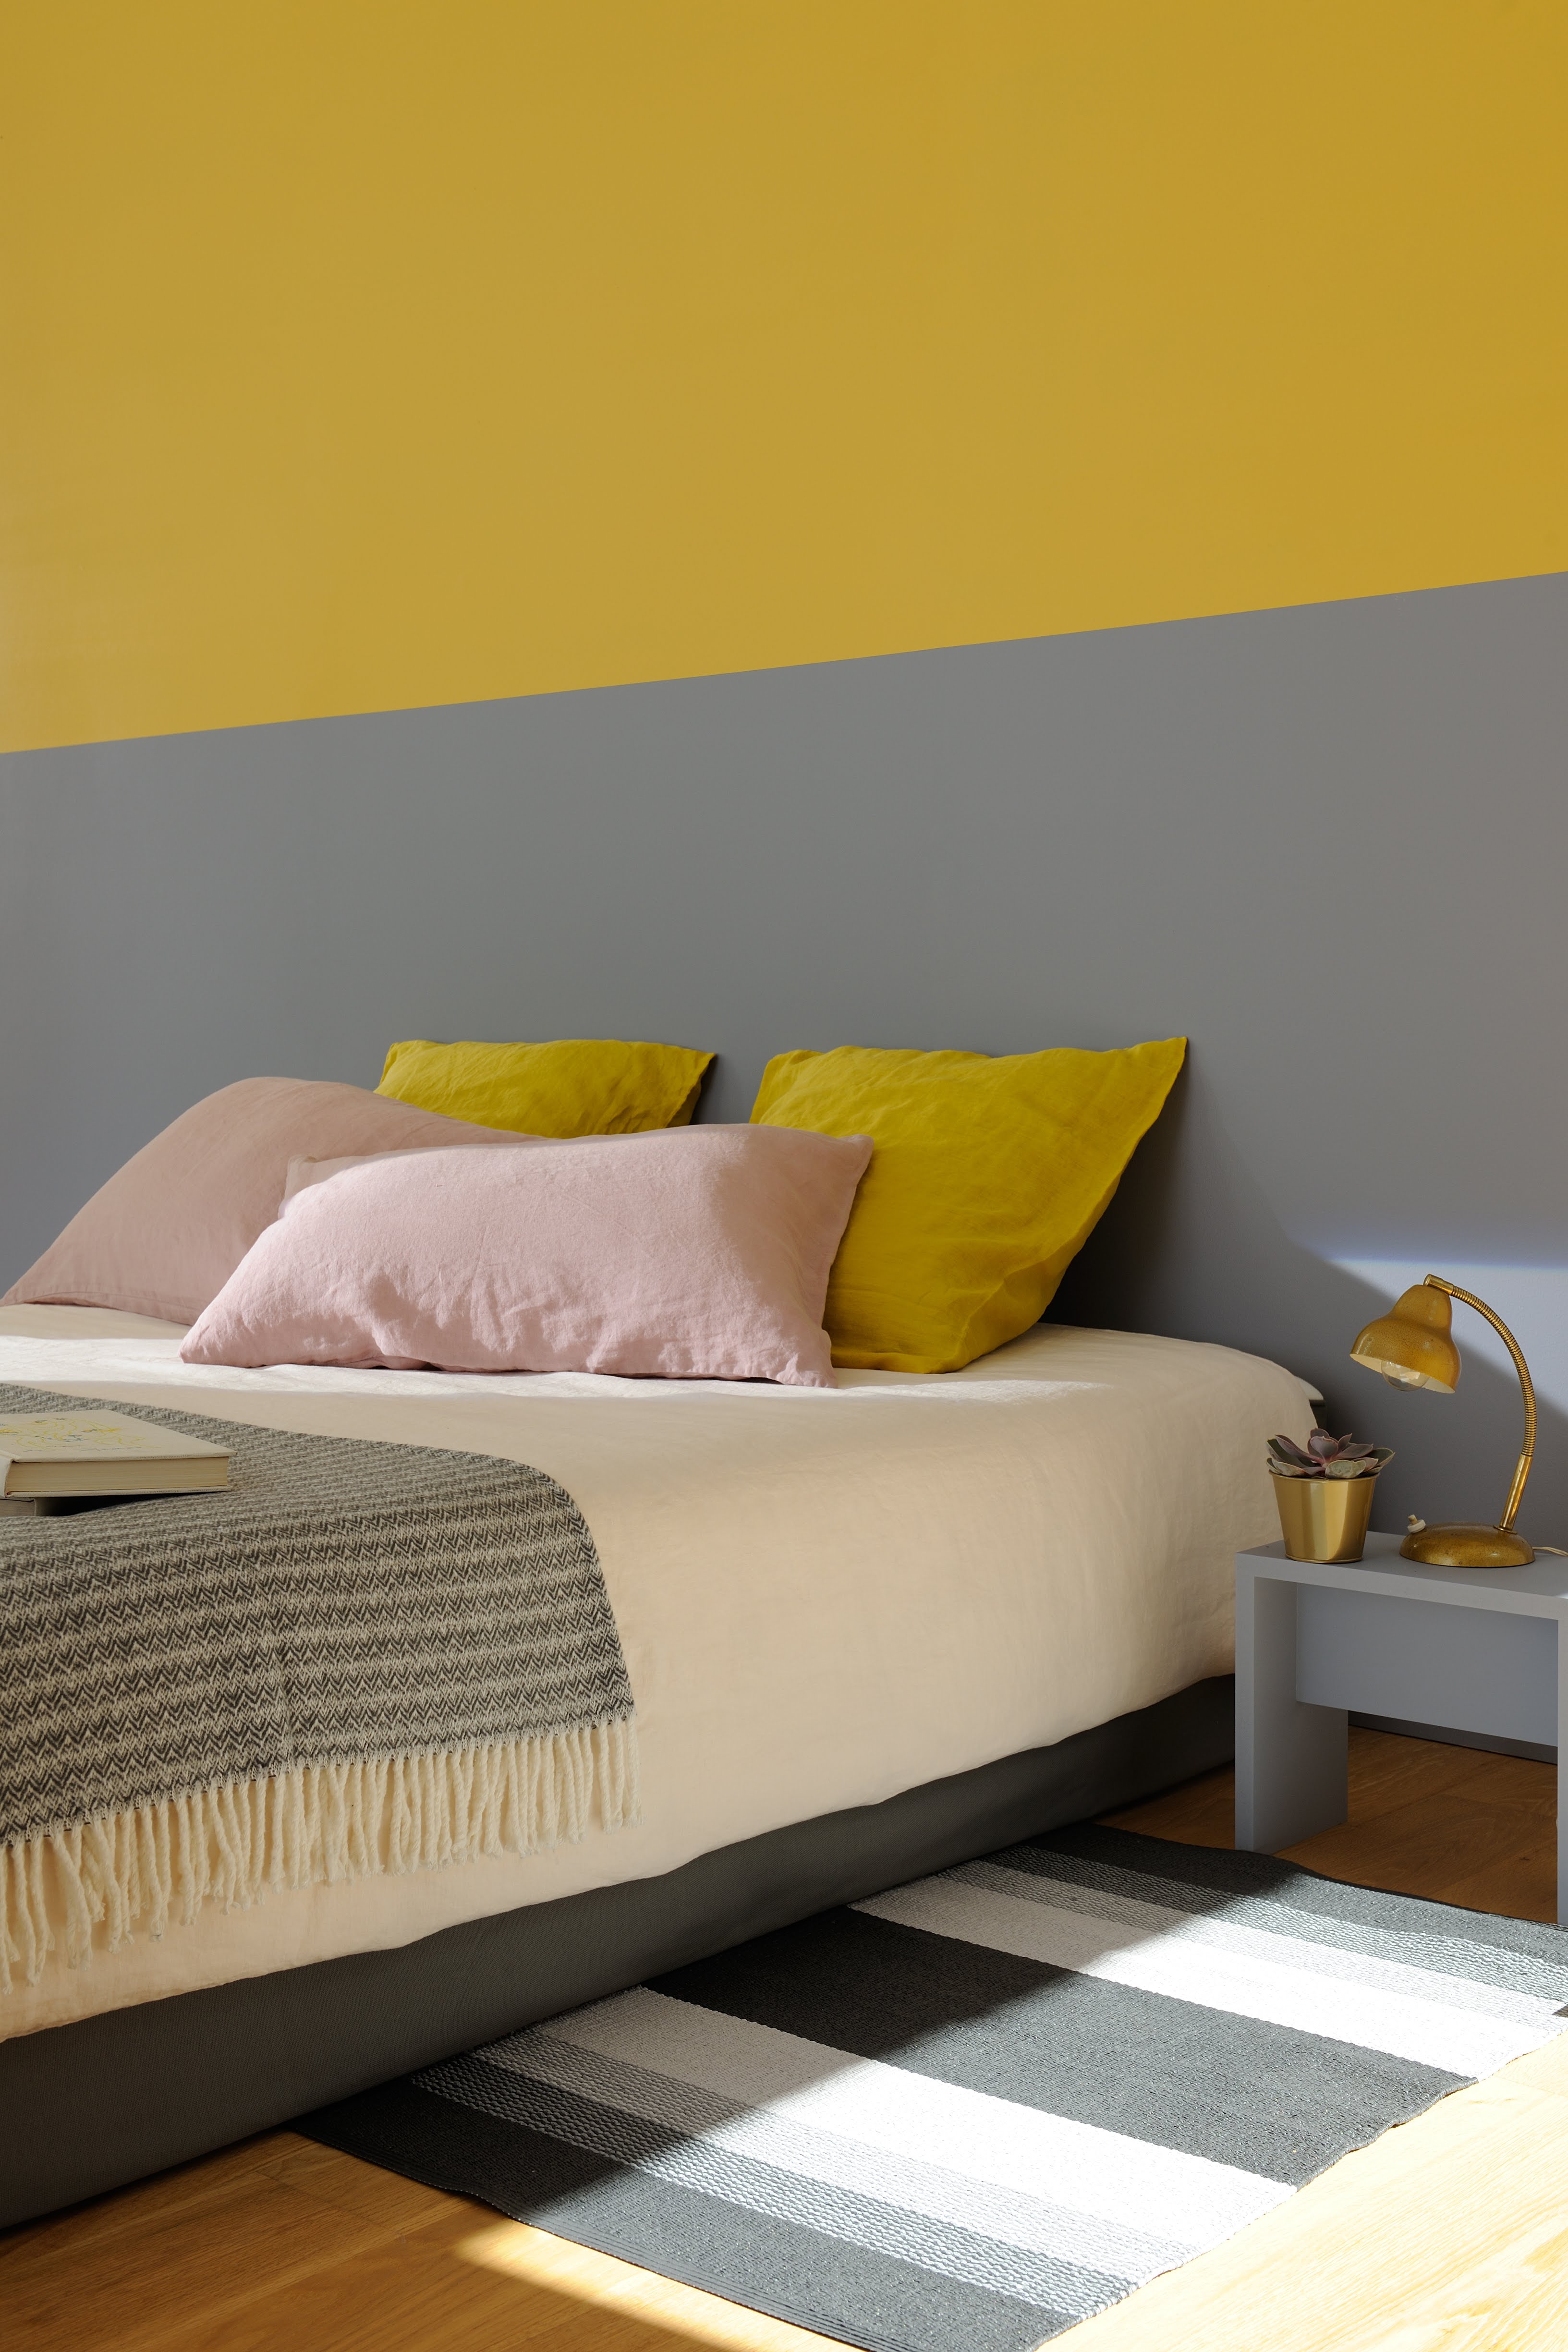 Chambre adulte réalisée avec de la peinture intérieure dans les tons de jaunes et de gris